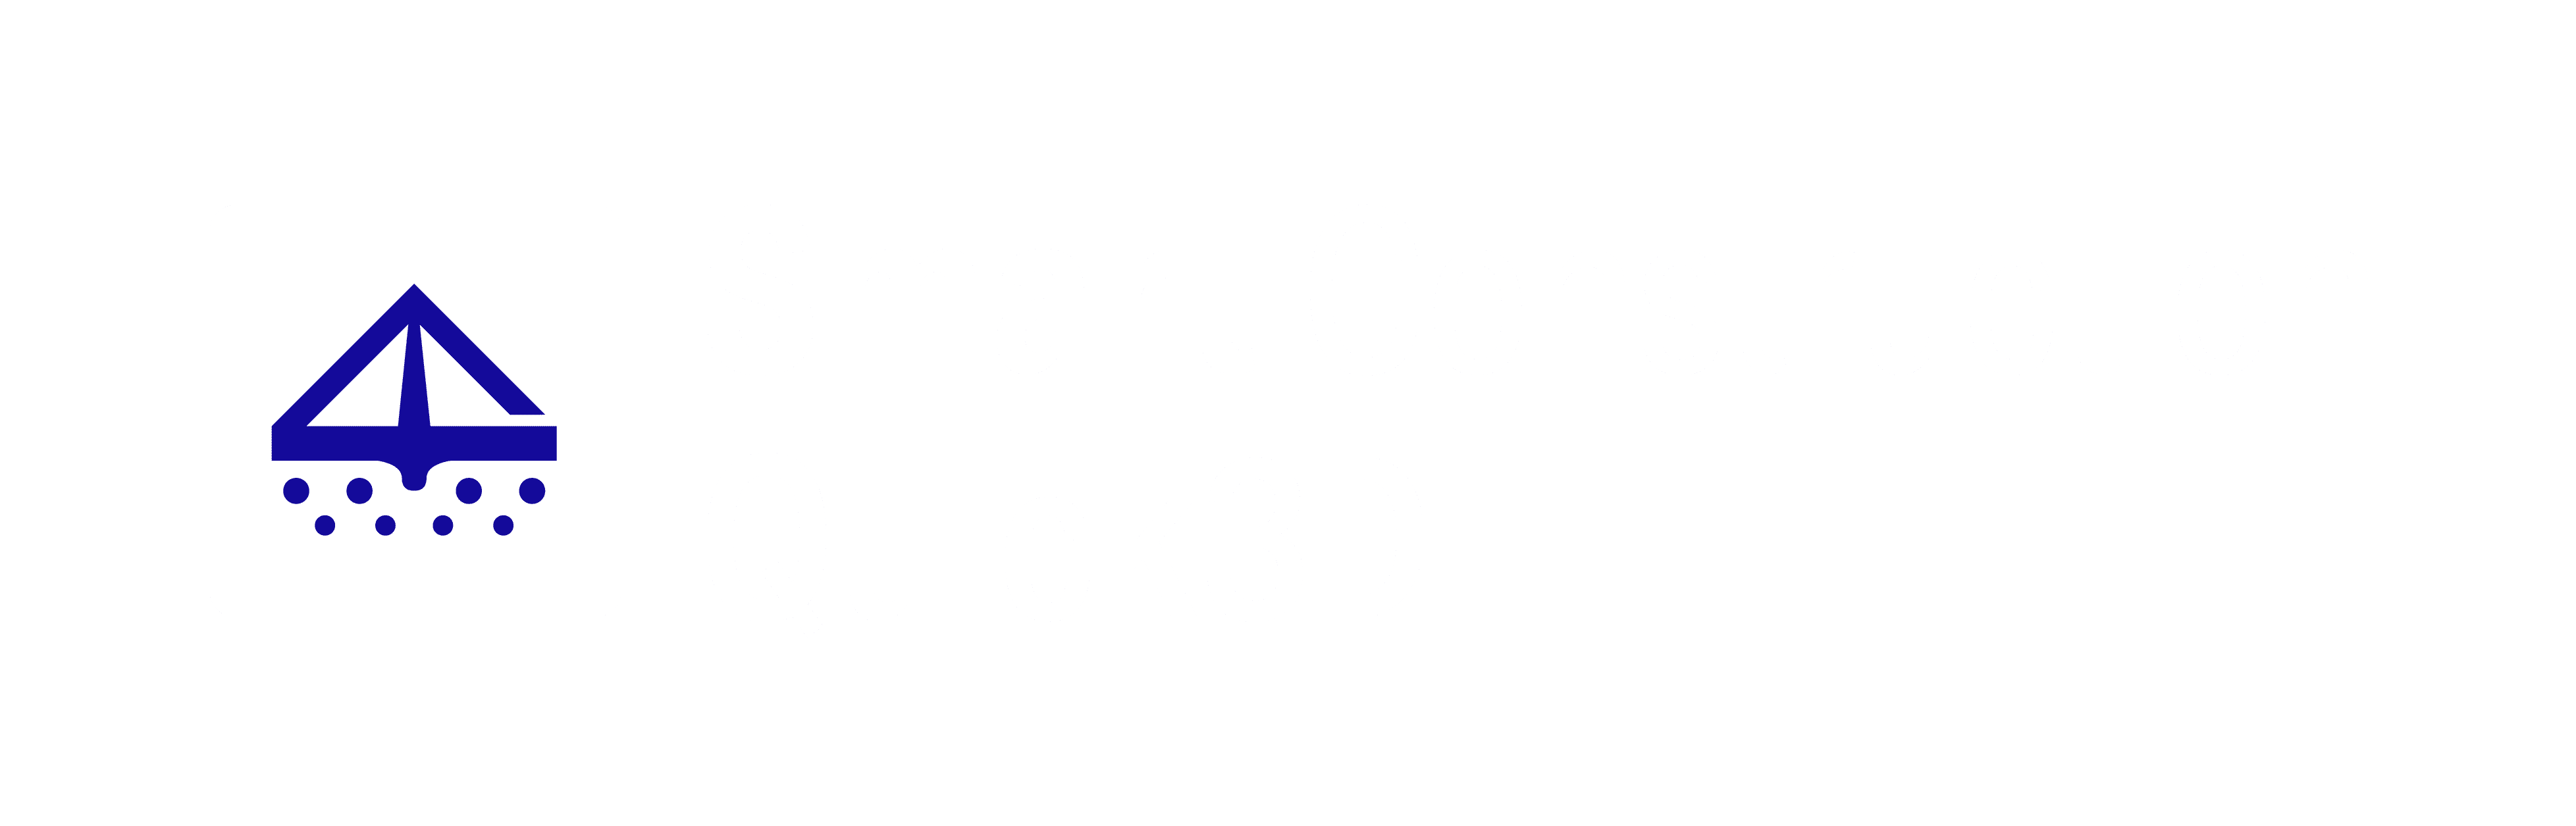 Smart Construction Quick3D